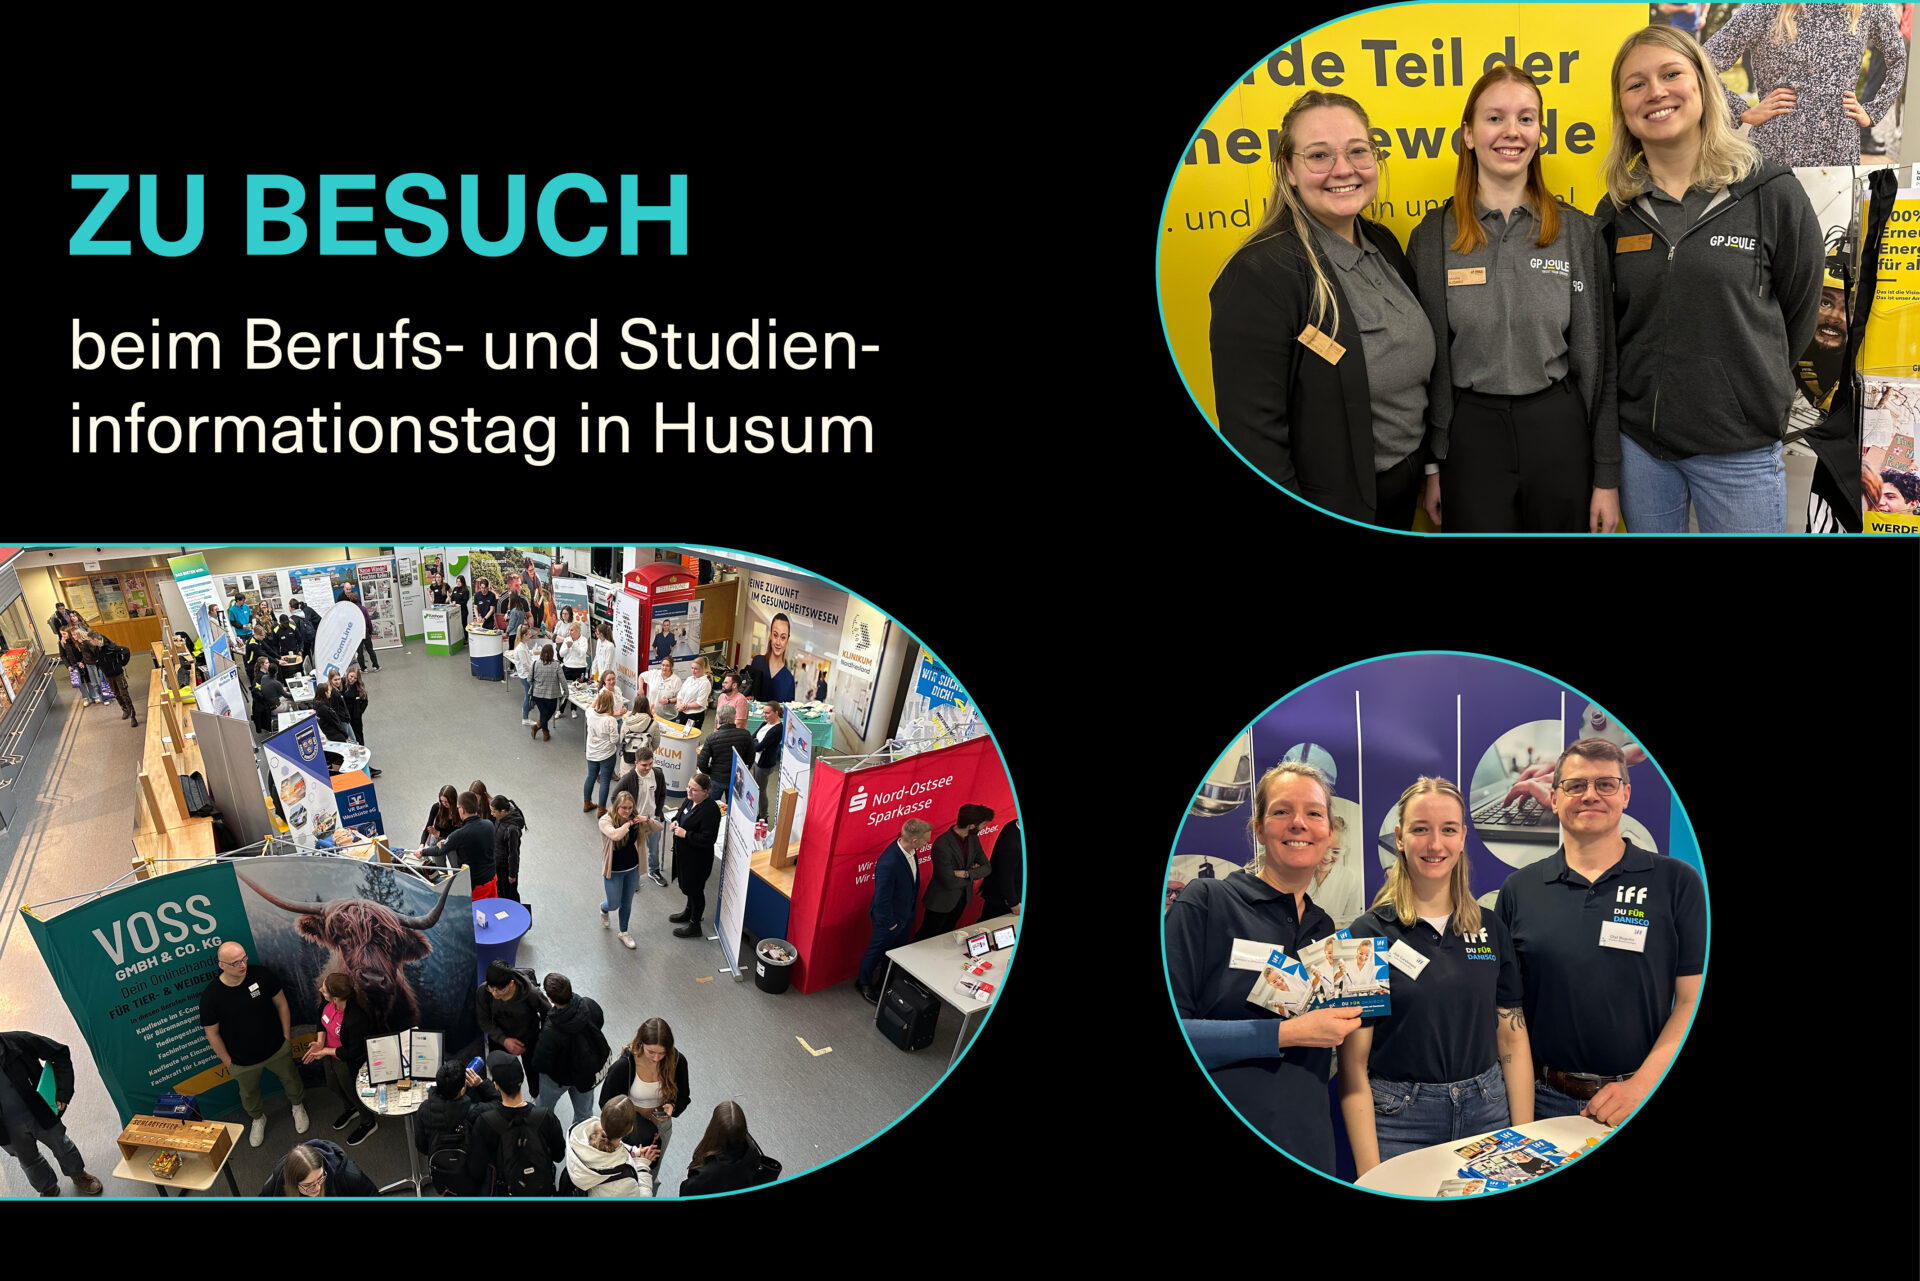 Die Hermann-Tast-Schule in Husum: Energiegeladen in die berufliche Zukunft